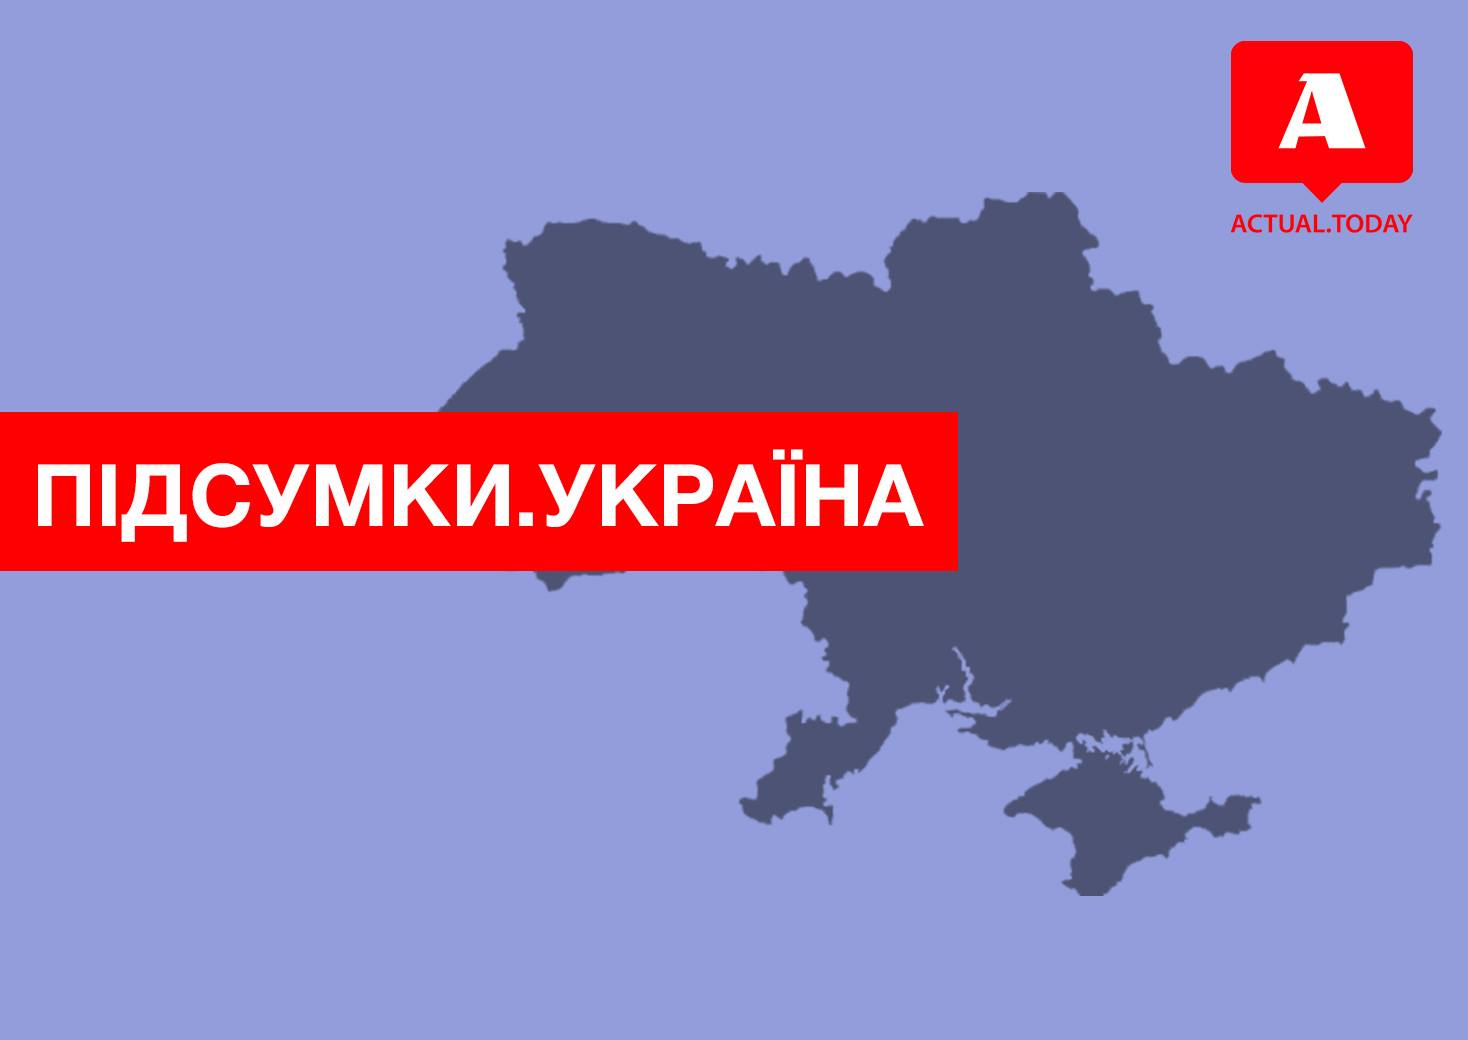 В Украине продолжается эпидемия кори, ЦИК официально объявила результаты выборов, Зеленский ищет себе спикера – главные новости Украины за вторник